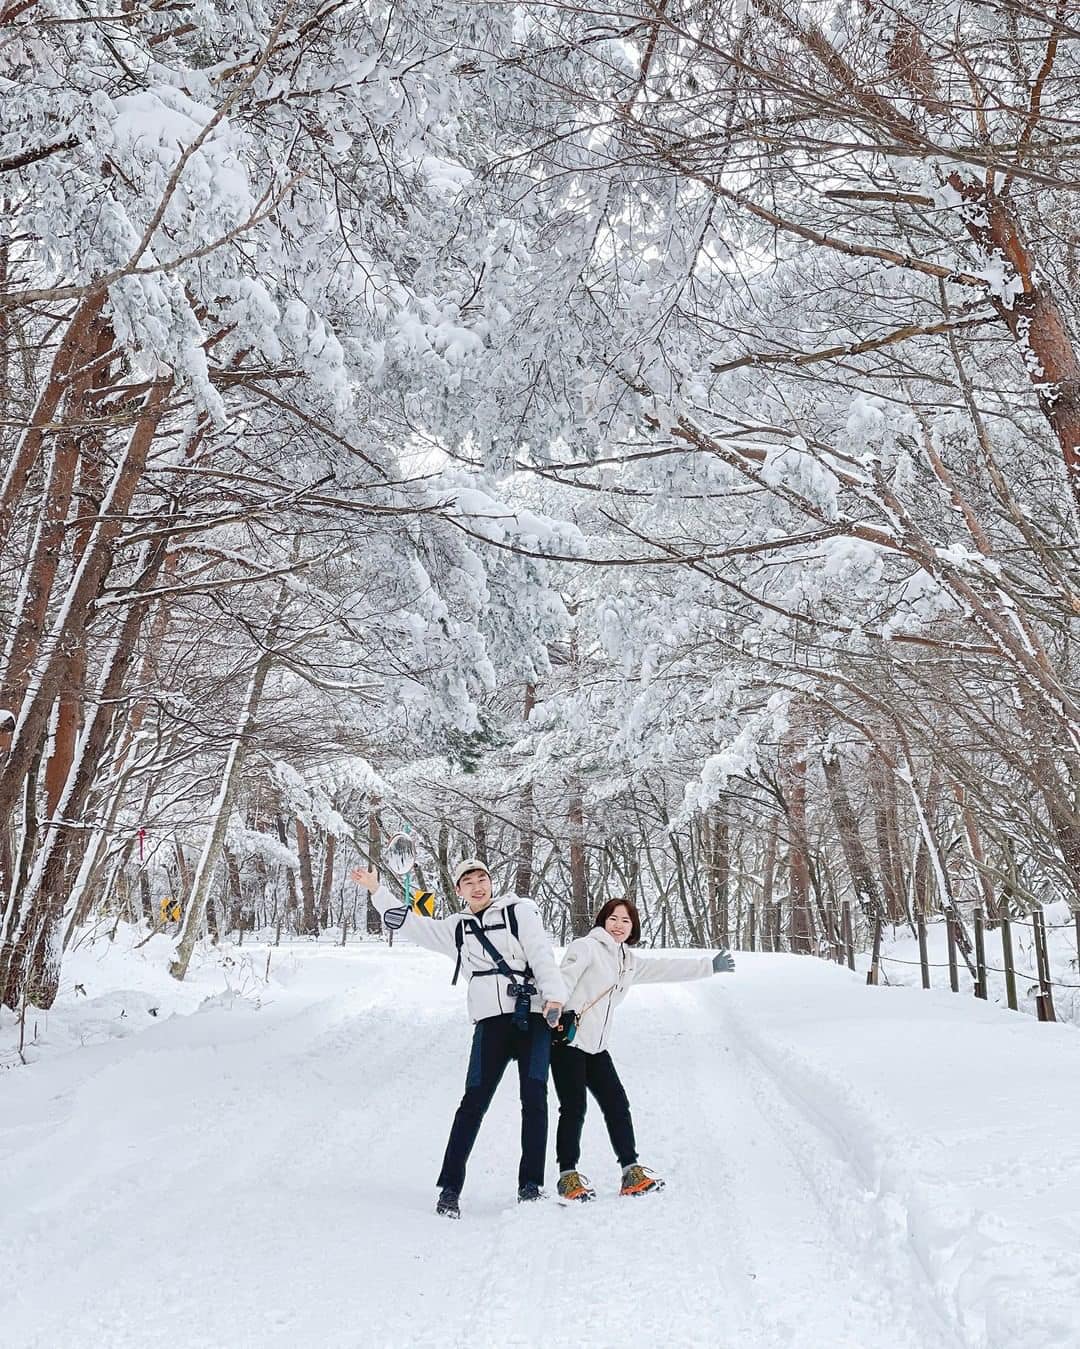 Núi Hallasan, Jeju đẹp hùng vĩ trong tuyết